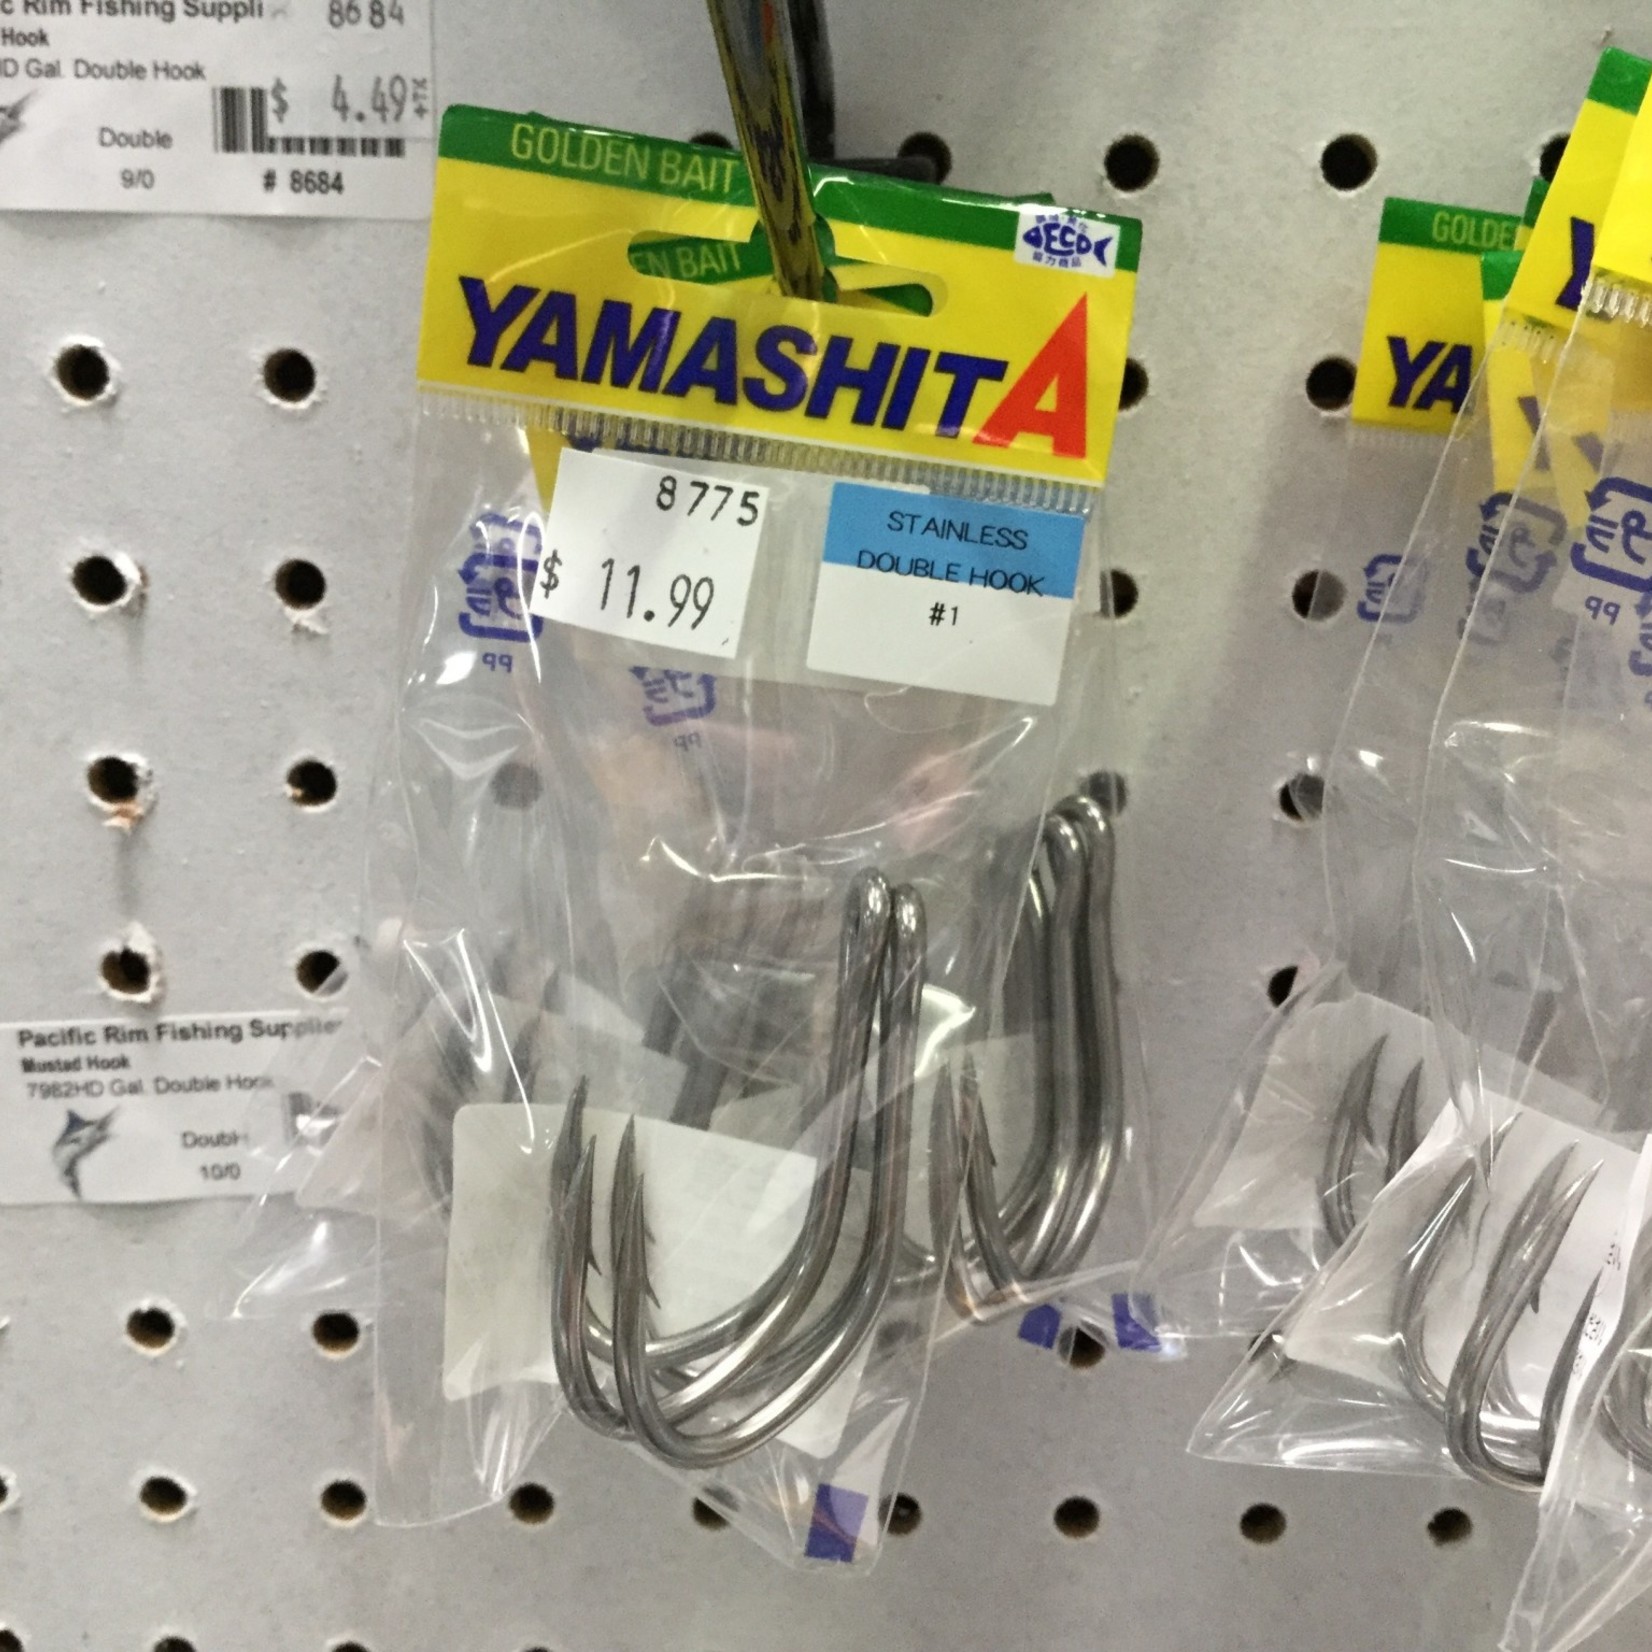 Yamashita Yamashita SS Double Hook